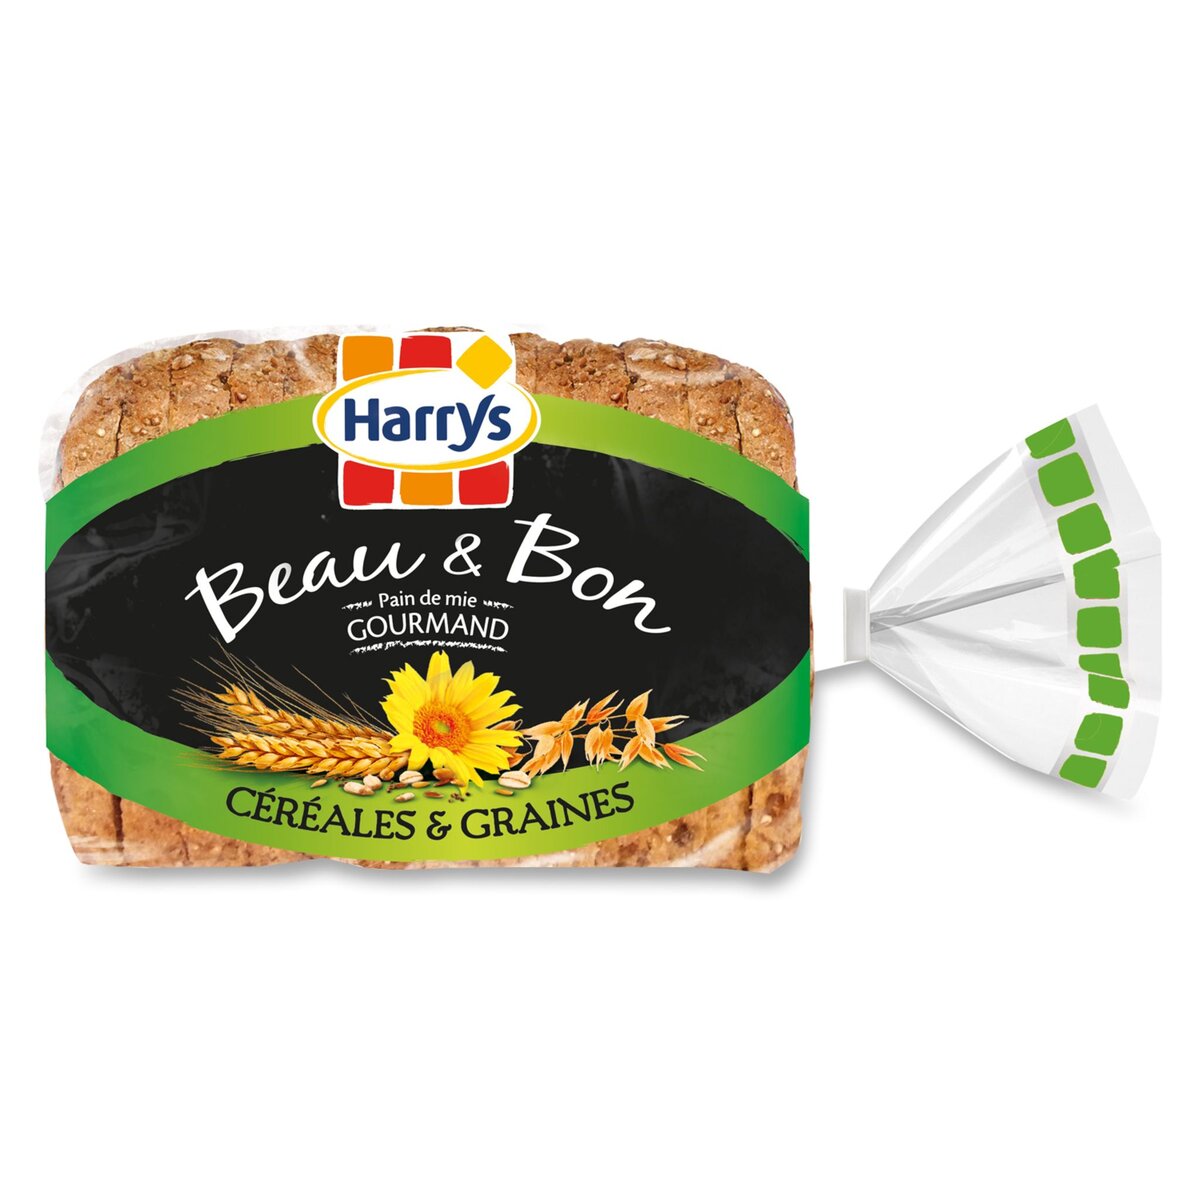 HARRY'S Harrys beau et bon pain de mie céréales 325g